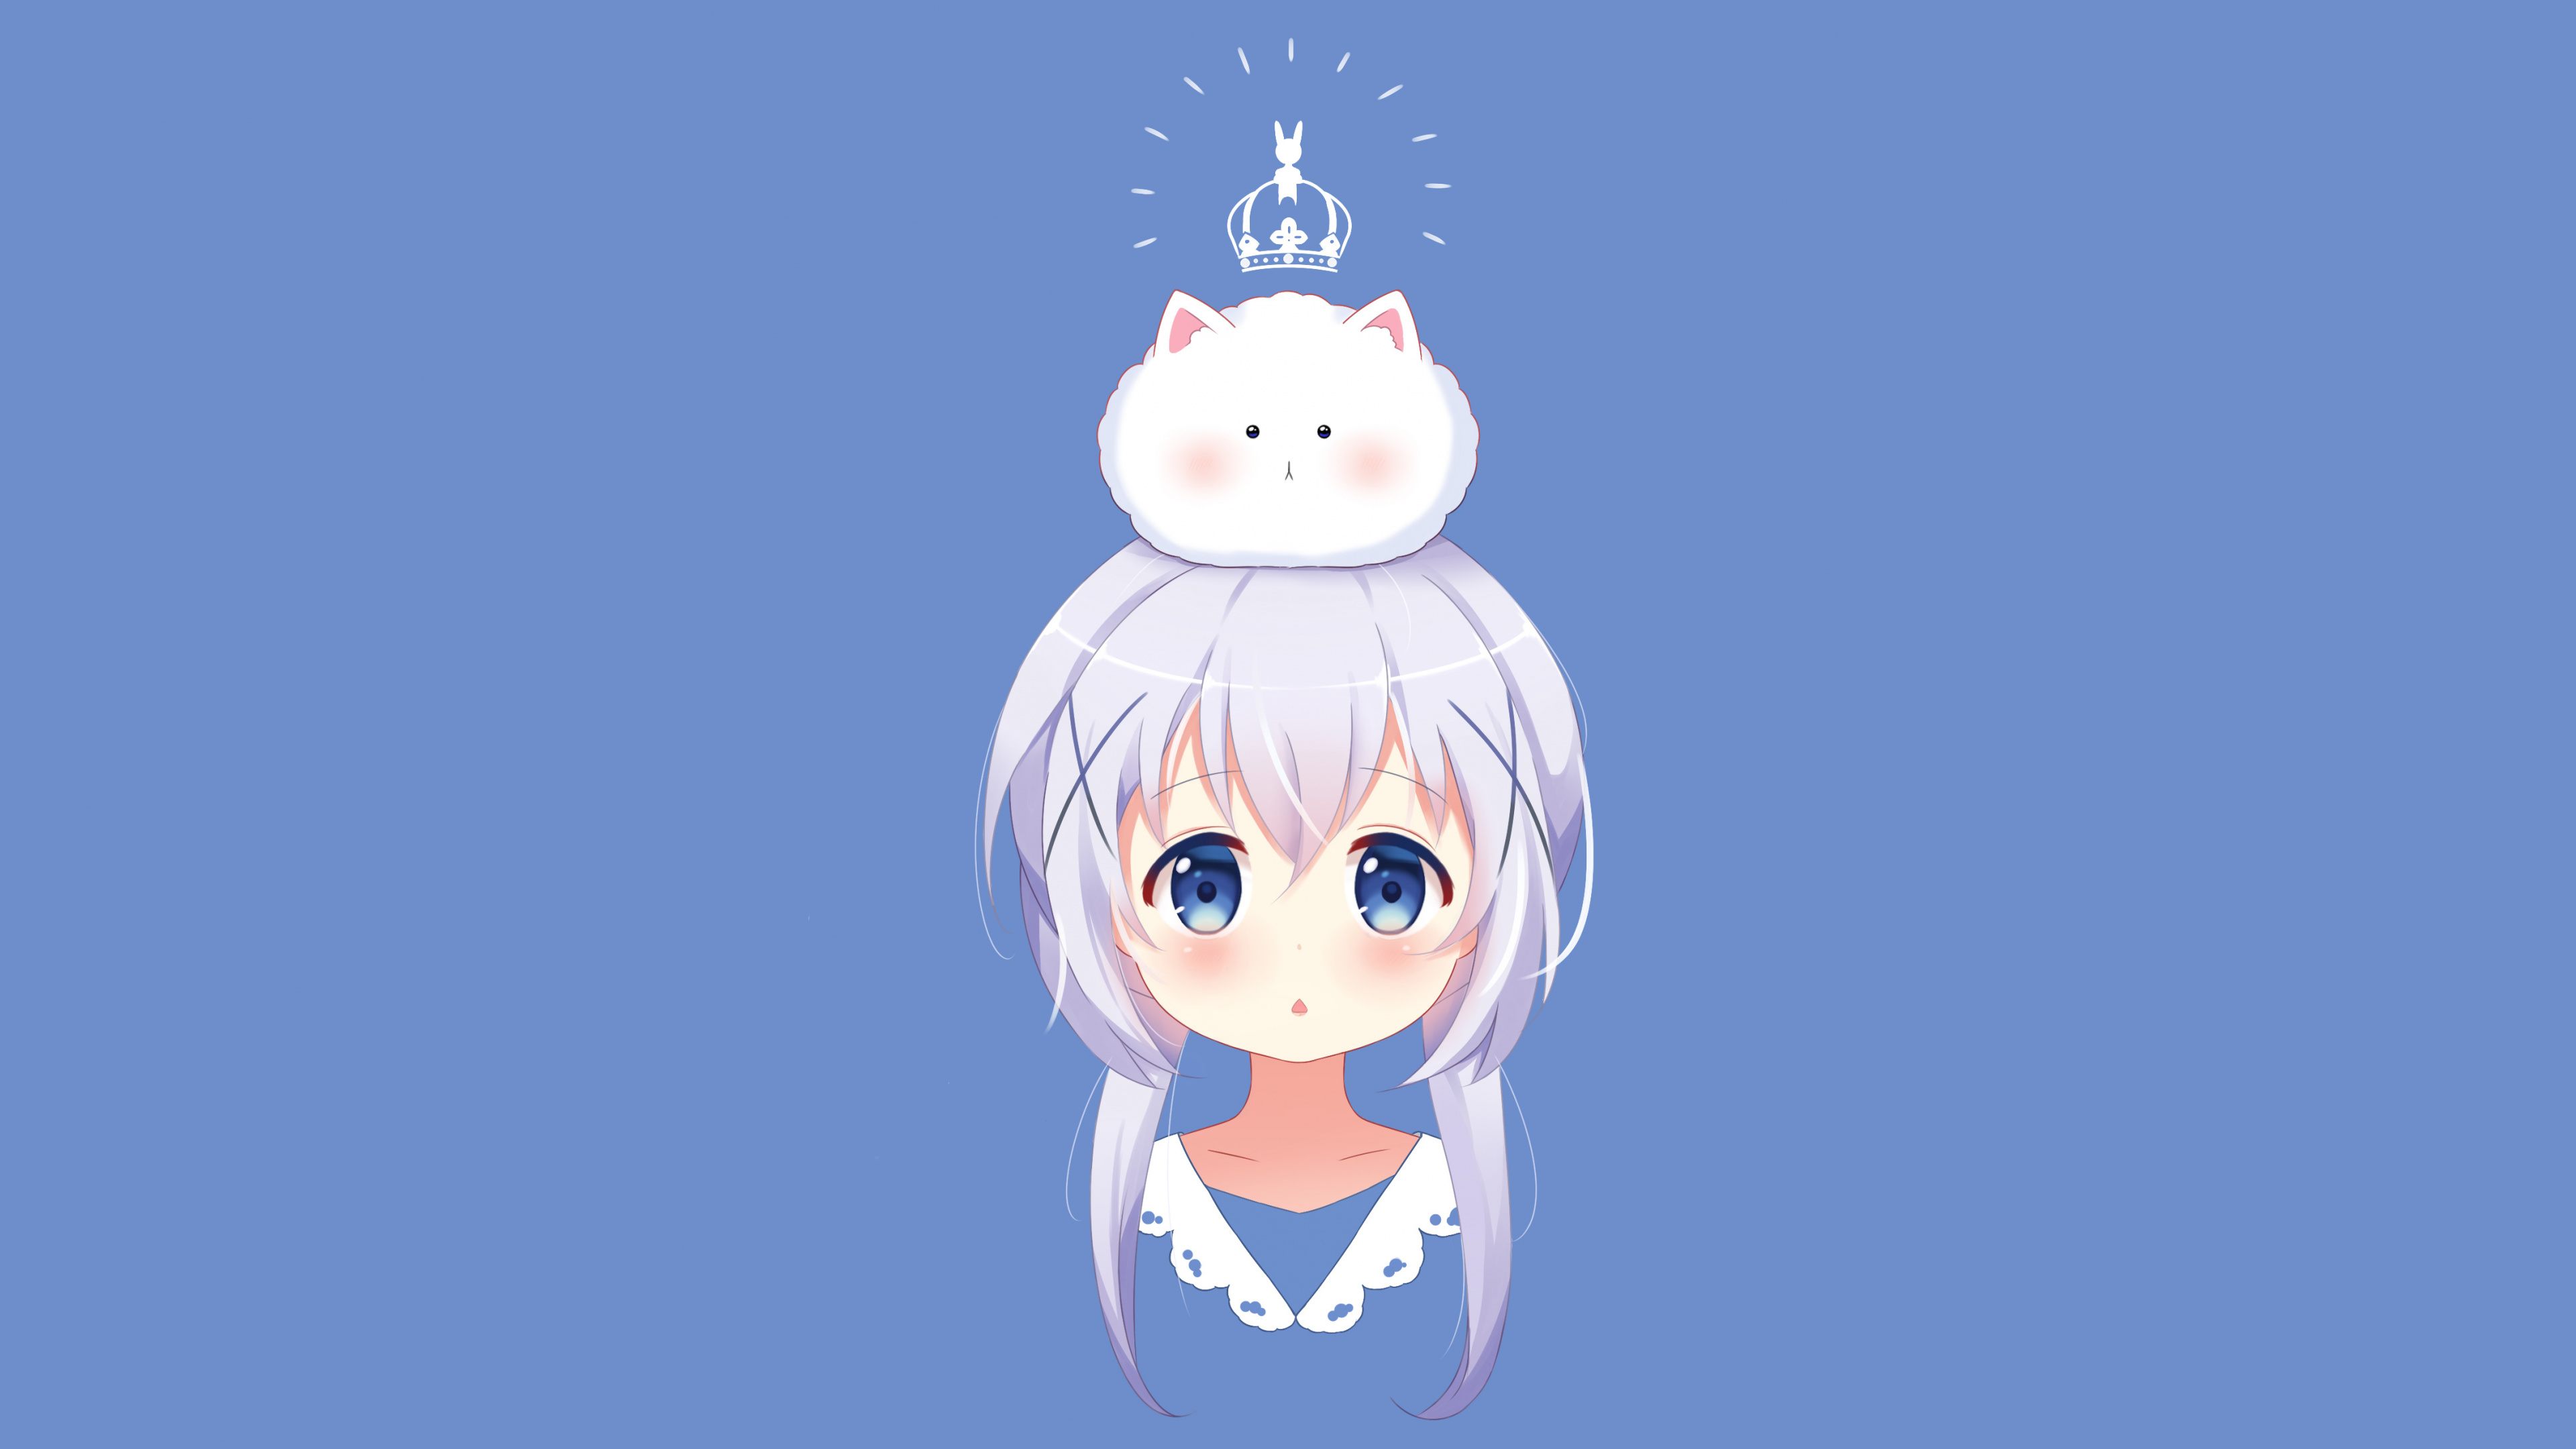 Chica en Vestido Azul y Blanco Personaje de Anime. Wallpaper in 3840x2160 Resolution